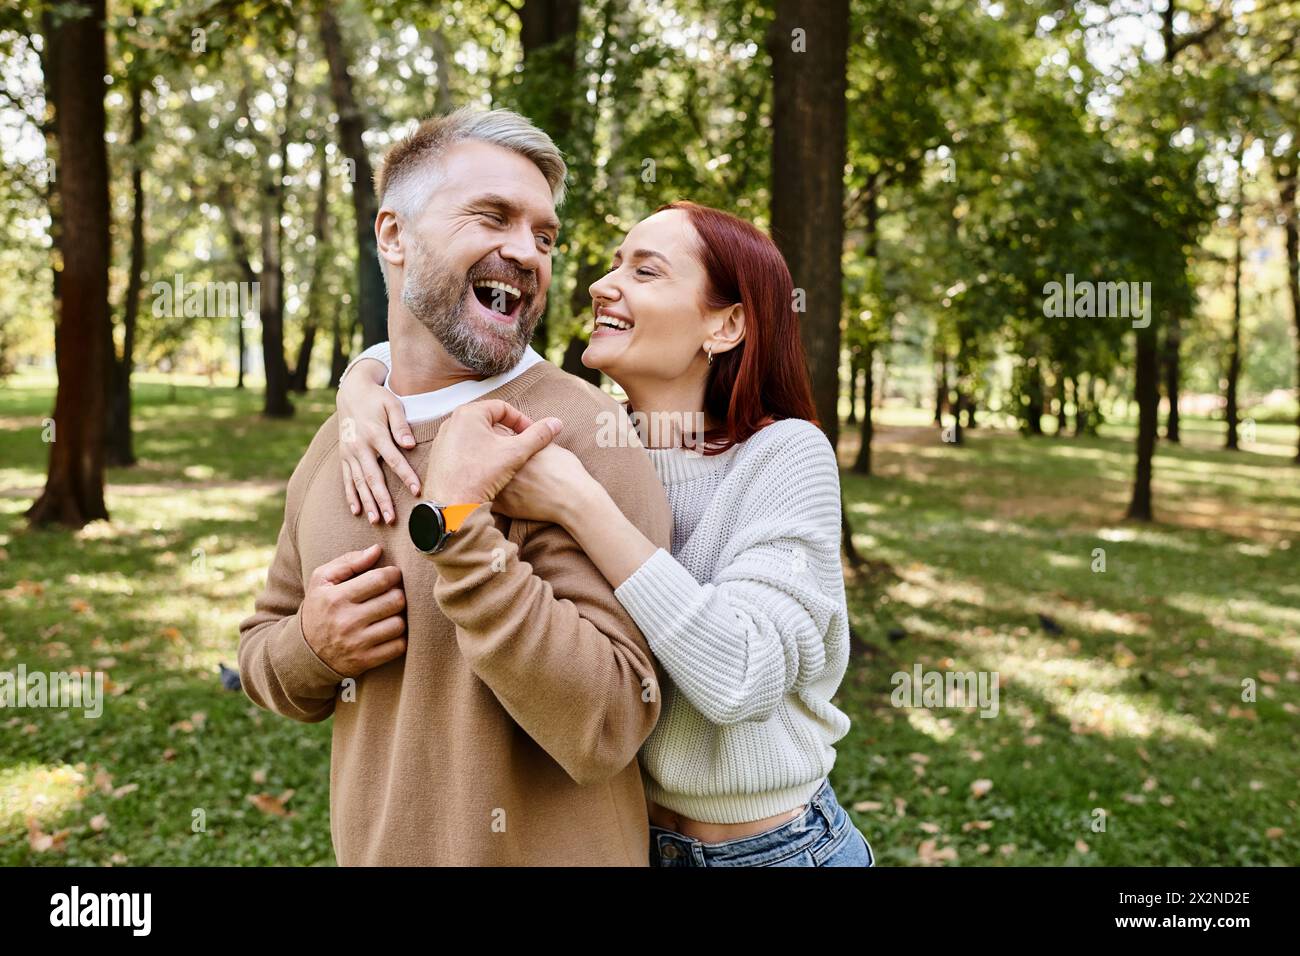 Ein Mann hält eine Frau zärtlich in einem Park. Stockfoto